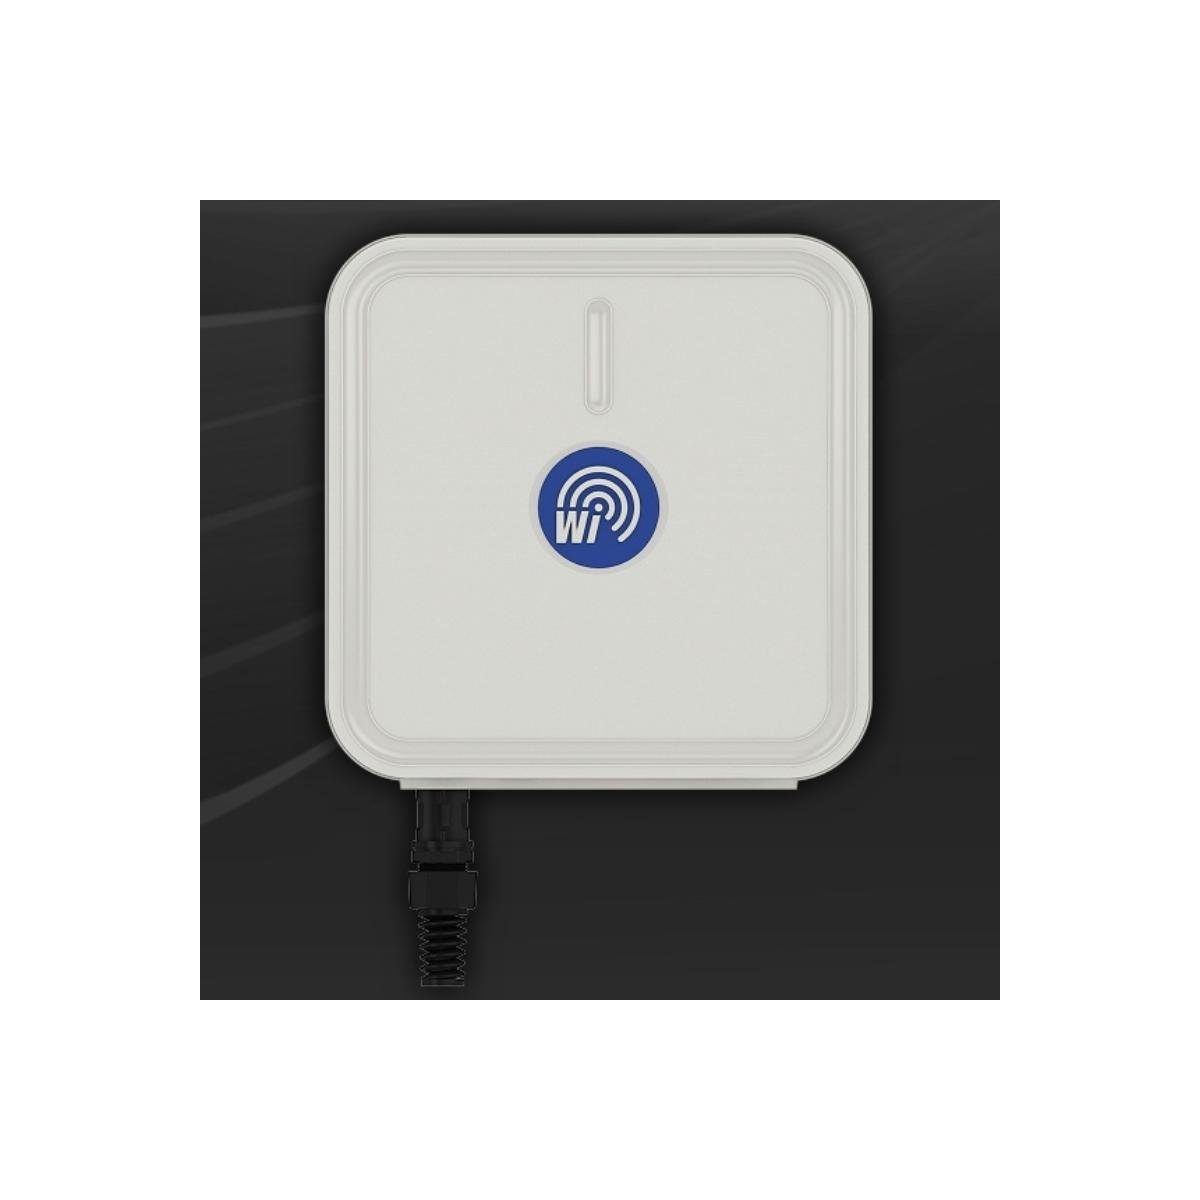 SA Sektorantenne, 14 V - inkl. WiMount 5-90-14 WiBOX Wireless Instruments WLAN-Antenne GHz, dBi 5